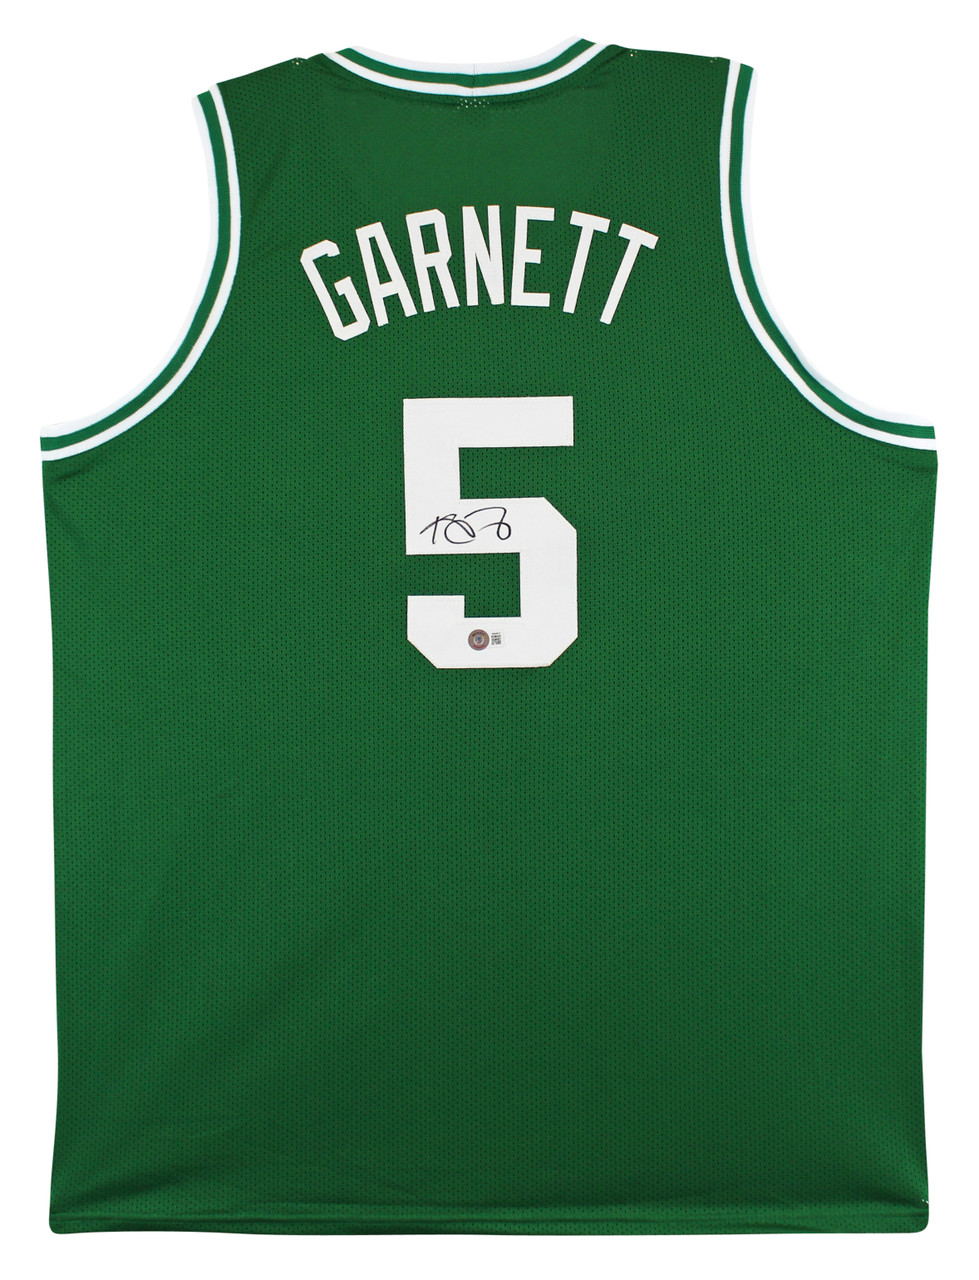 Kevin Garnett Back Signed Boston Celtics Jersey